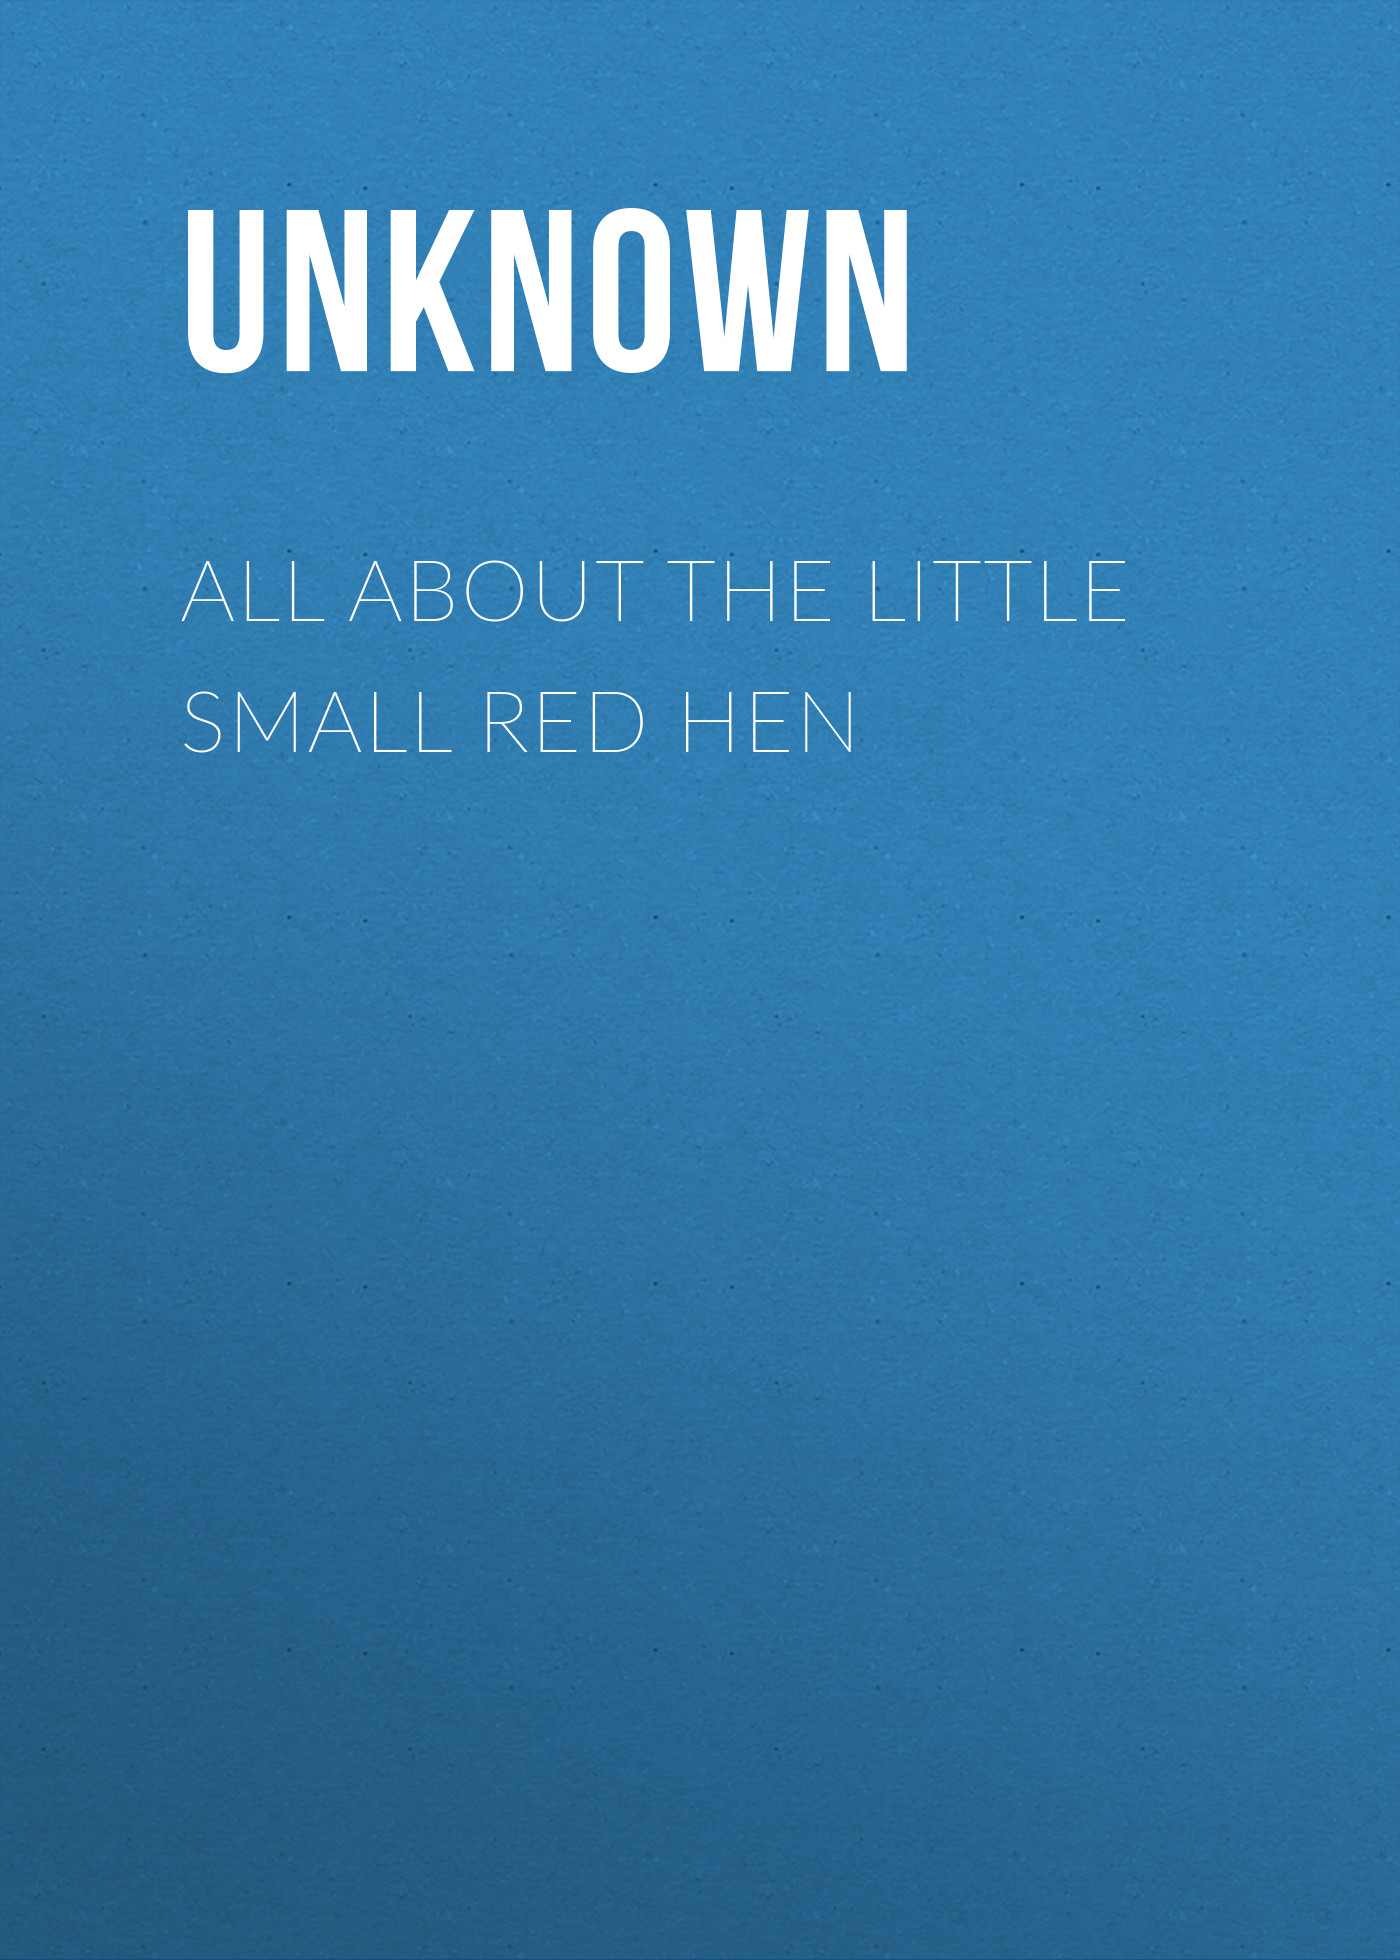 Книга All About the Little Small Red Hen из серии , созданная Unknown Unknown, может относится к жанру Зарубежные детские книги, Зарубежная старинная литература, Зарубежная классика. Стоимость электронной книги All About the Little Small Red Hen с идентификатором 35489295 составляет 0 руб.